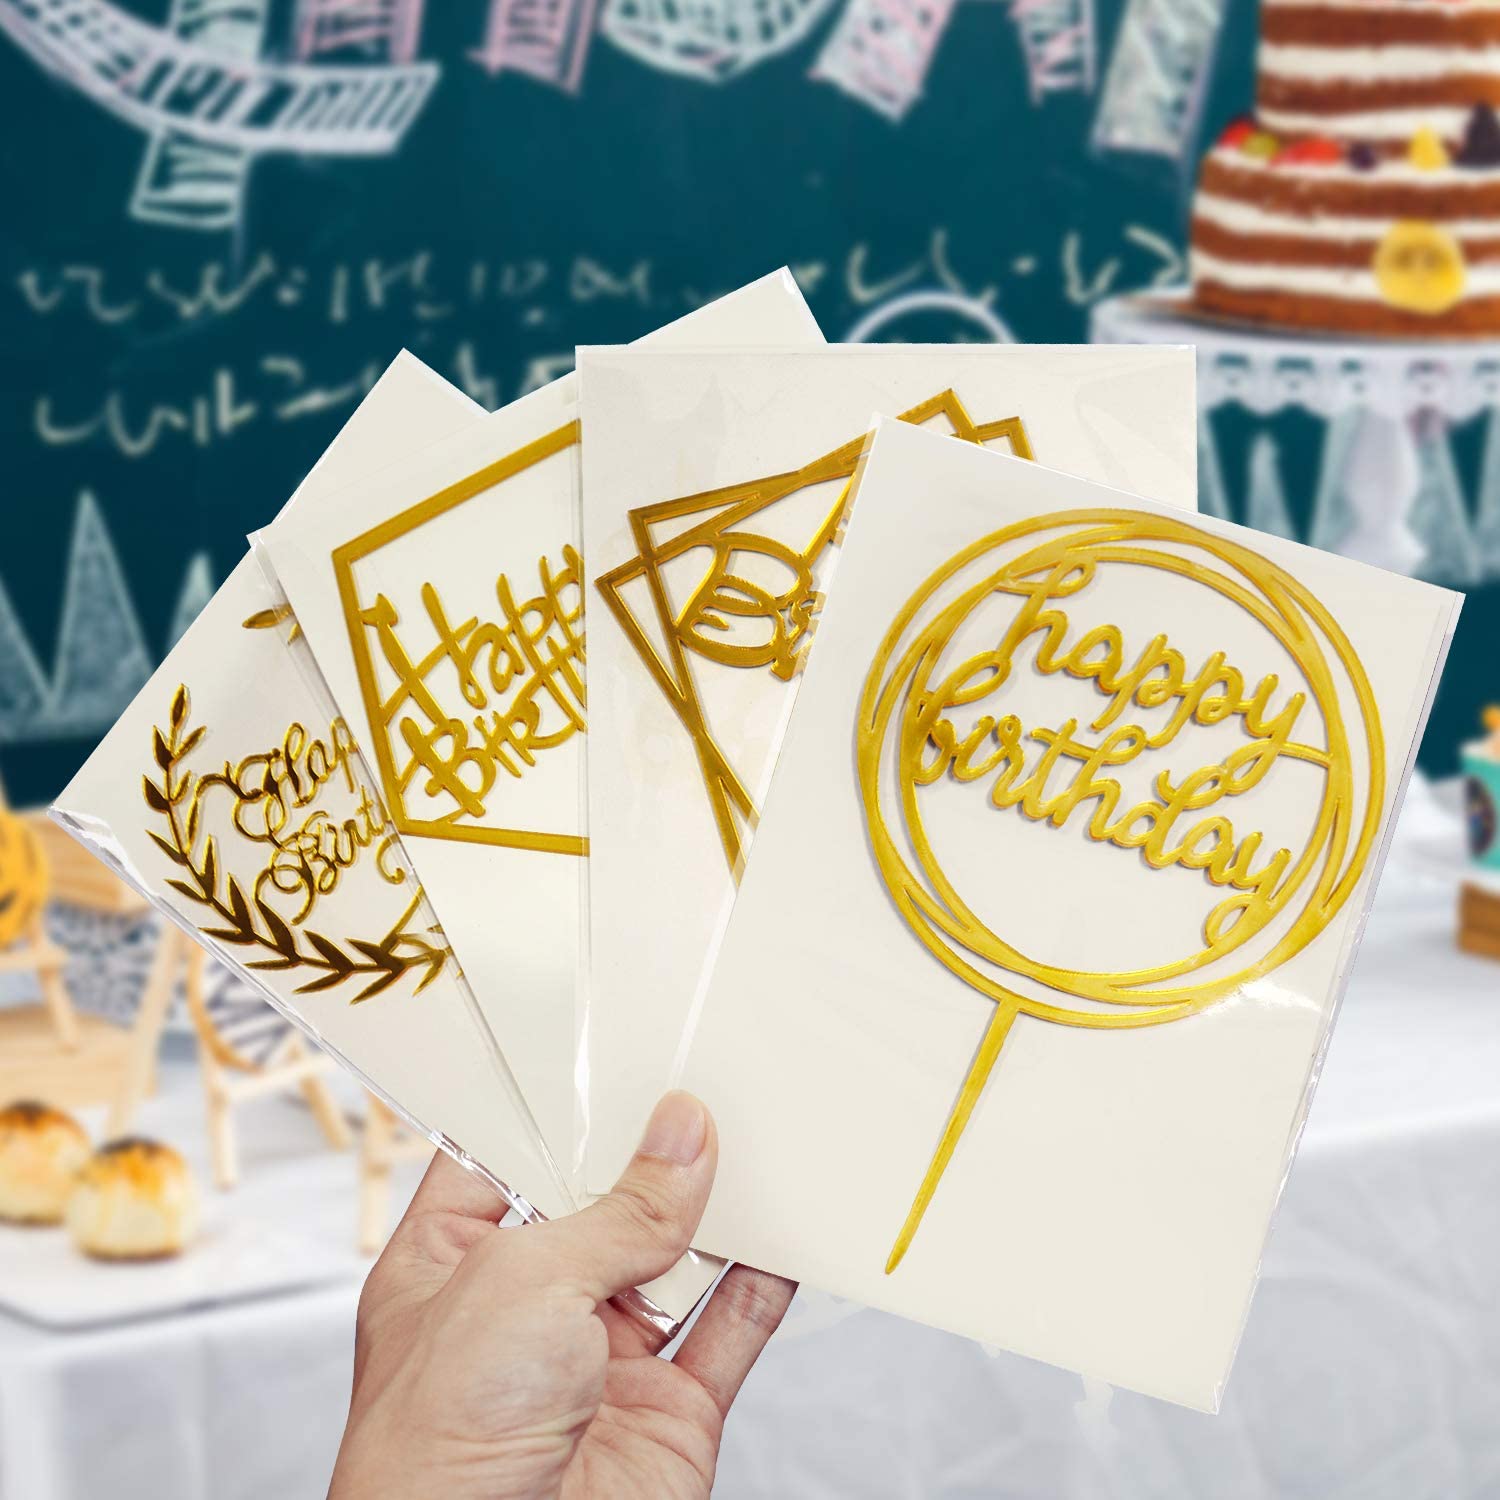 Set aus Goldenen Happy Birthday- Cake Topper aus Acryl, gehalten wie ein Fächer von einer Hand